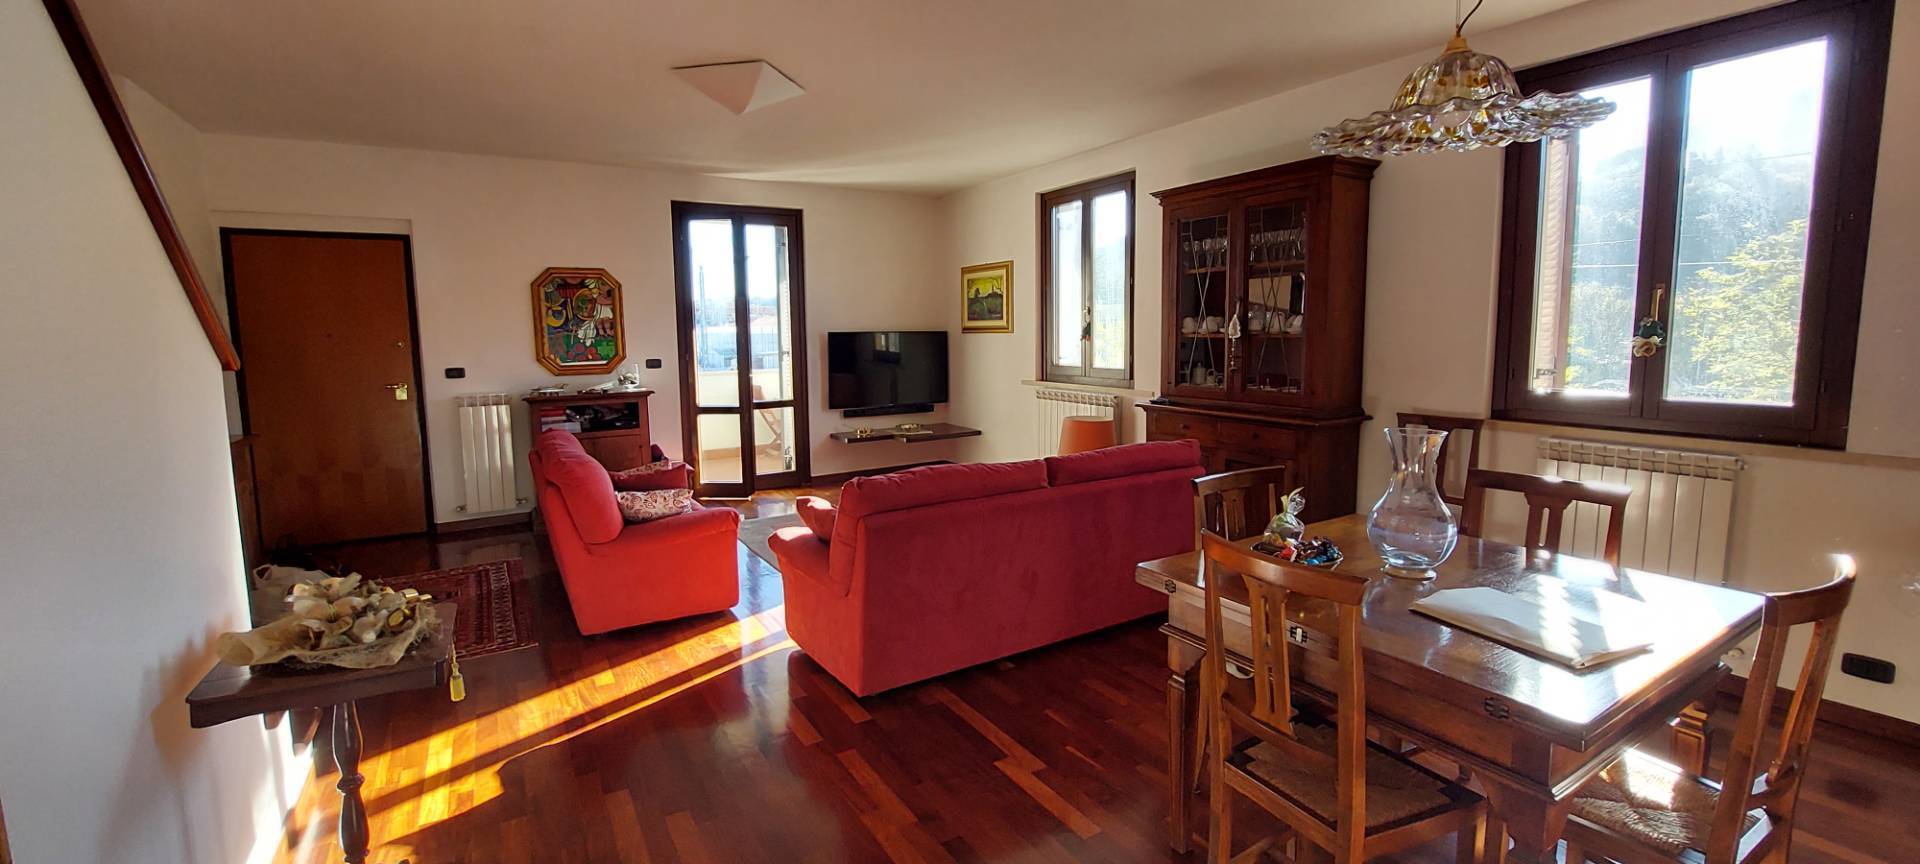 Appartamento con terrazzo, Ascoli Piceno s.s. giacomo e filippo